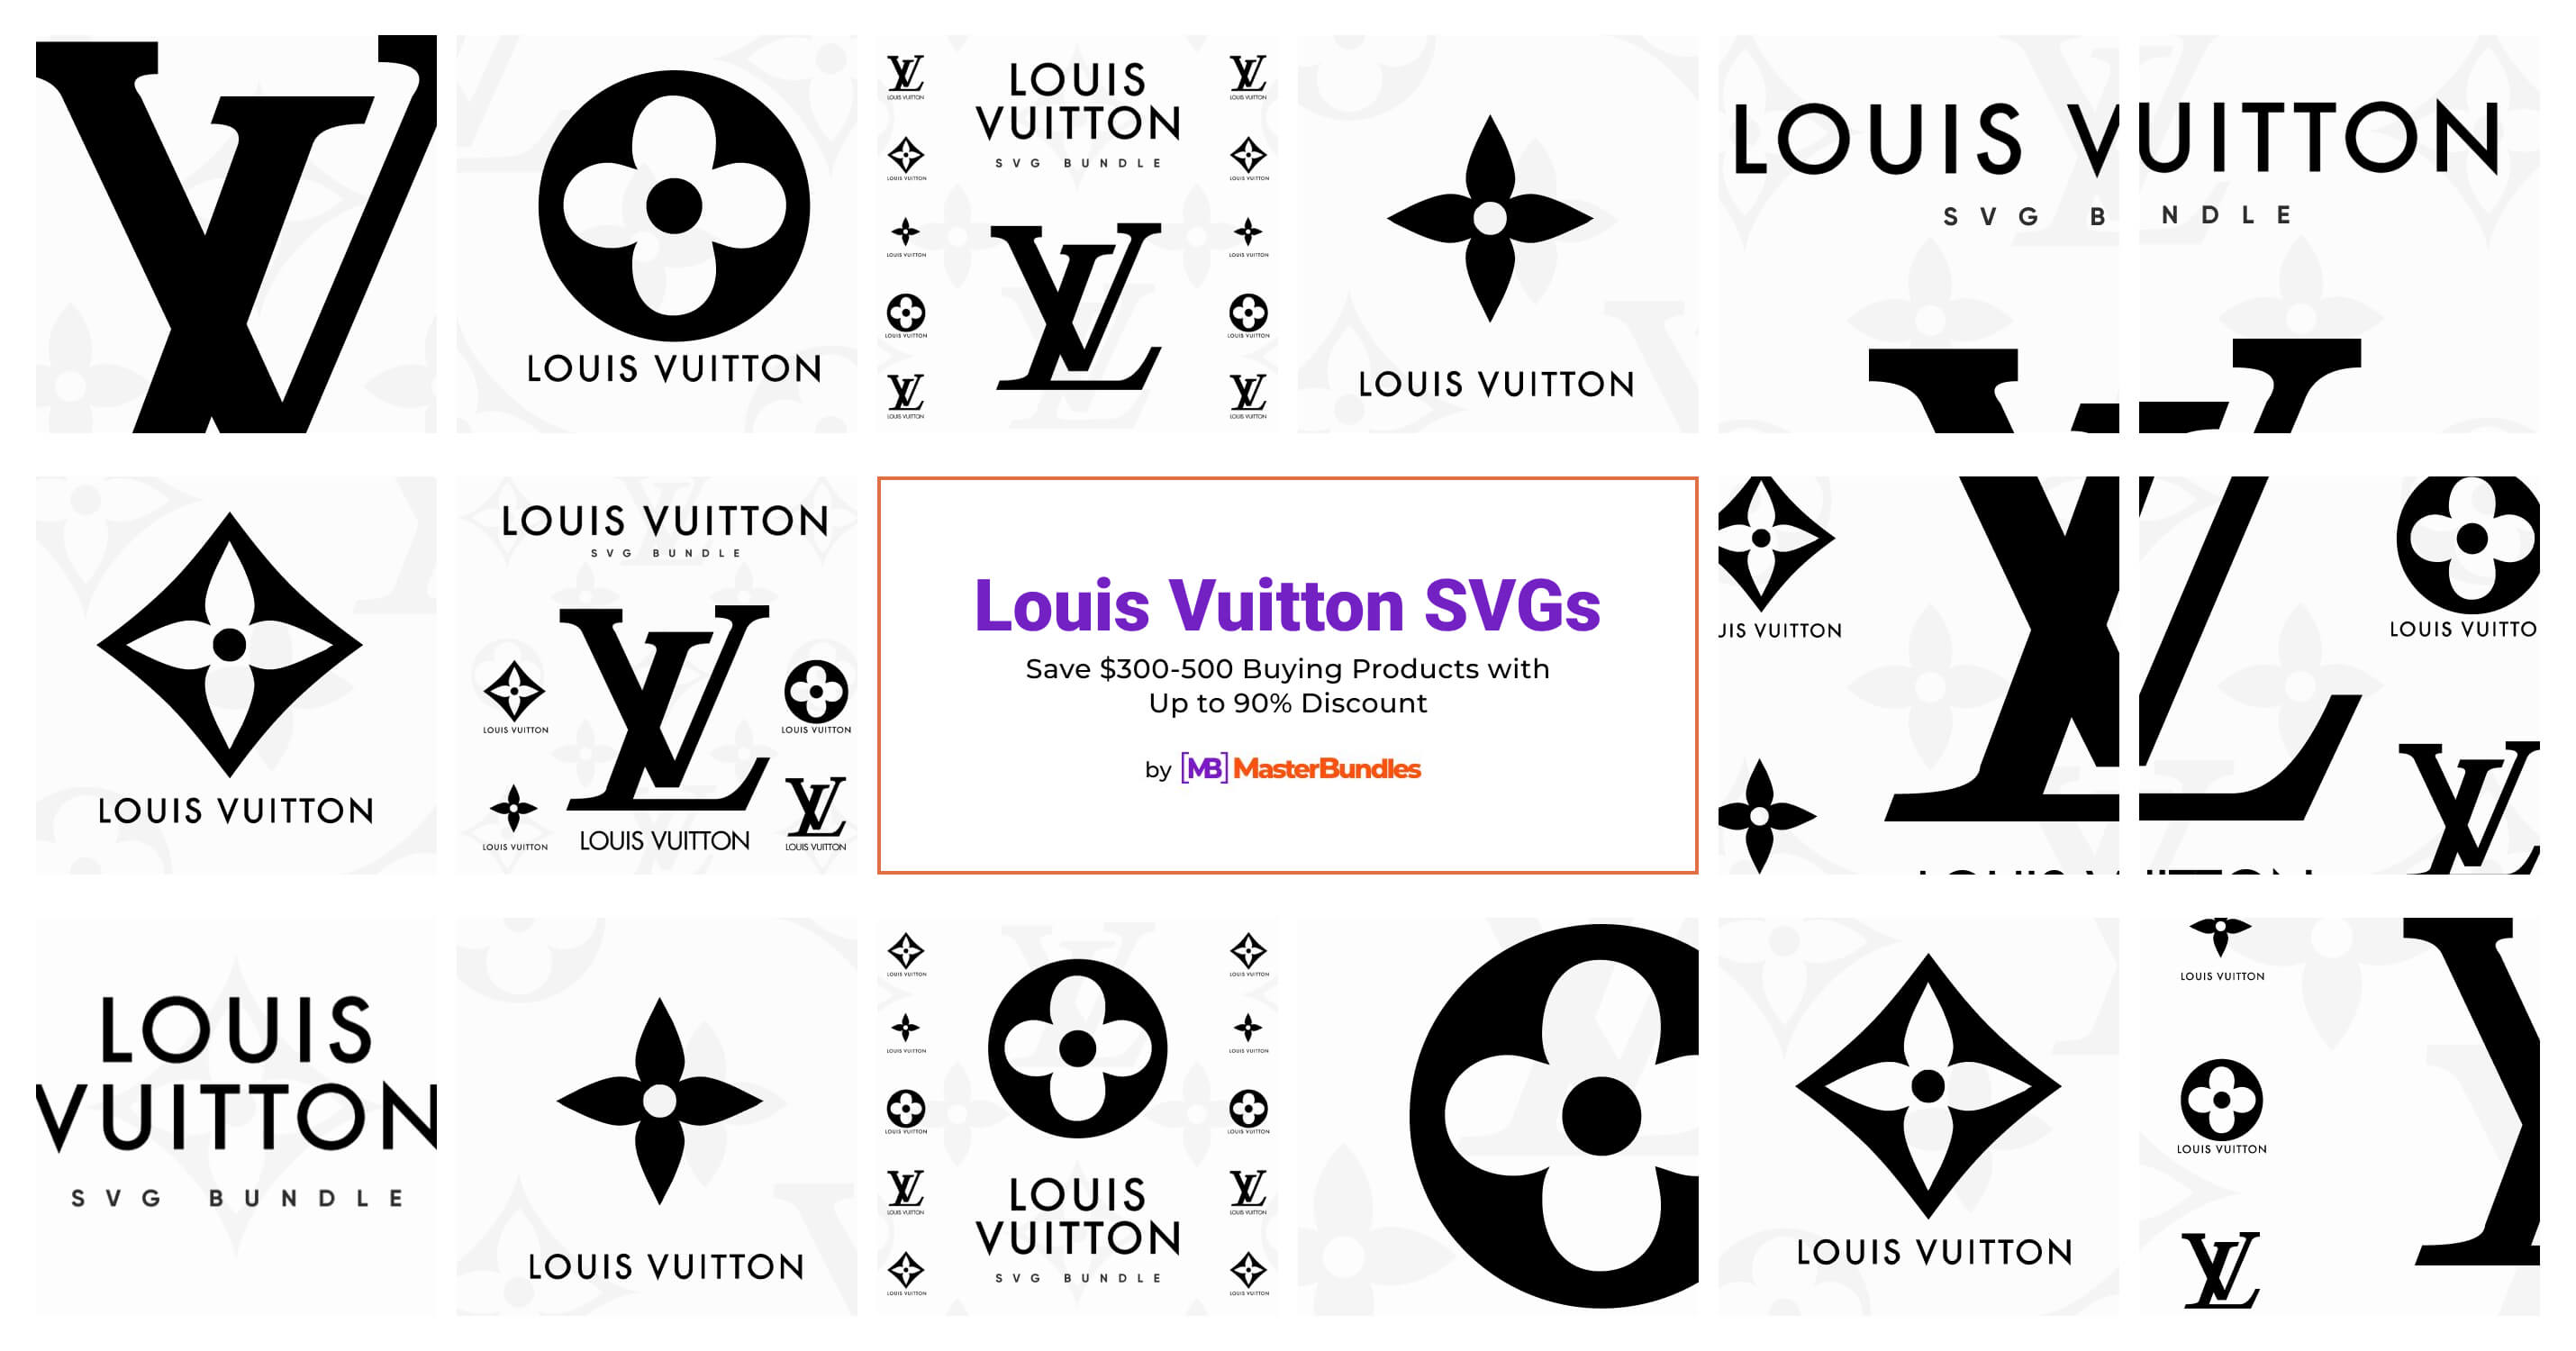 1+ Louis Vuitton SVGs for 2023 - MasterBundles